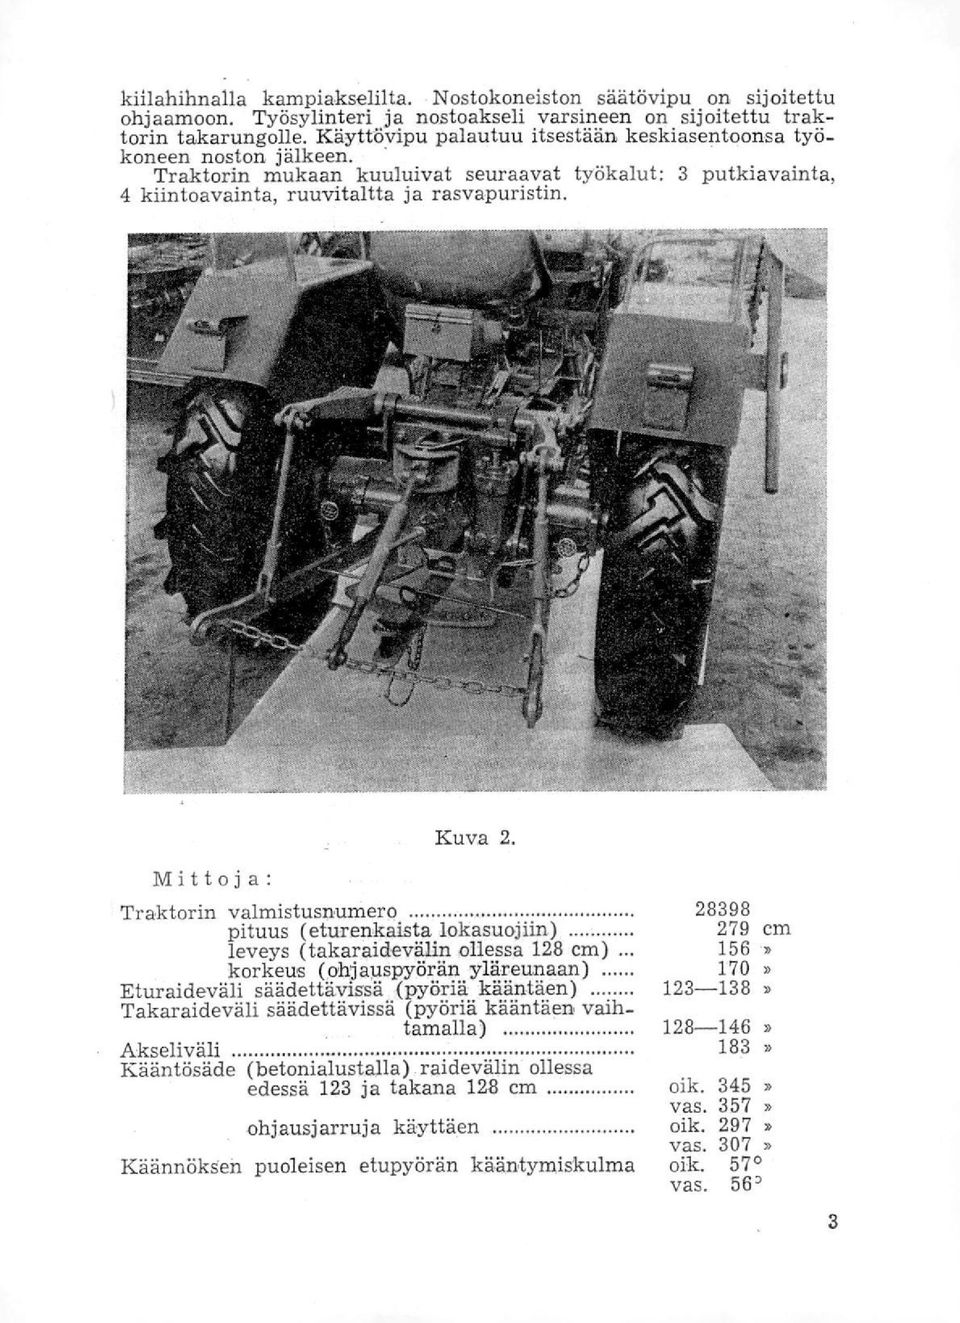 Mittoja: Traktorin valmistusnumero pituus (eturenkaista lokasuojiin) leveys (takaraidevälin ollessa 128 cm) korkeus (ohjauspyörän yläreunaan) Eturaideväli säädettävissä (pyöriä kääntäen)